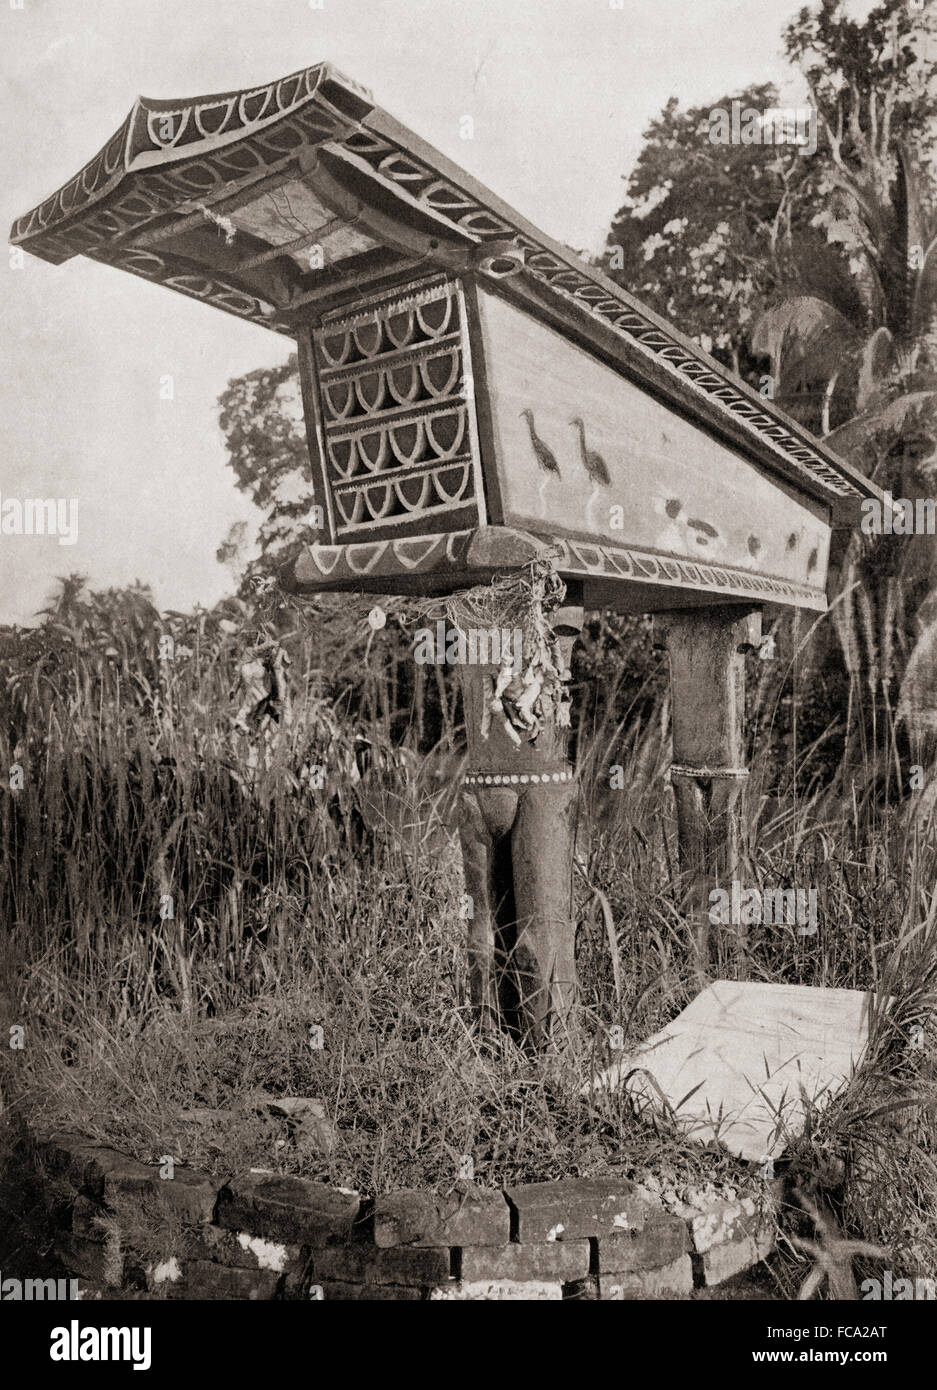 Un culte funéraire richement décorées sur l'une des îles Salomon, de l'Océanie. Après une 19e cenutry photographie. Banque D'Images